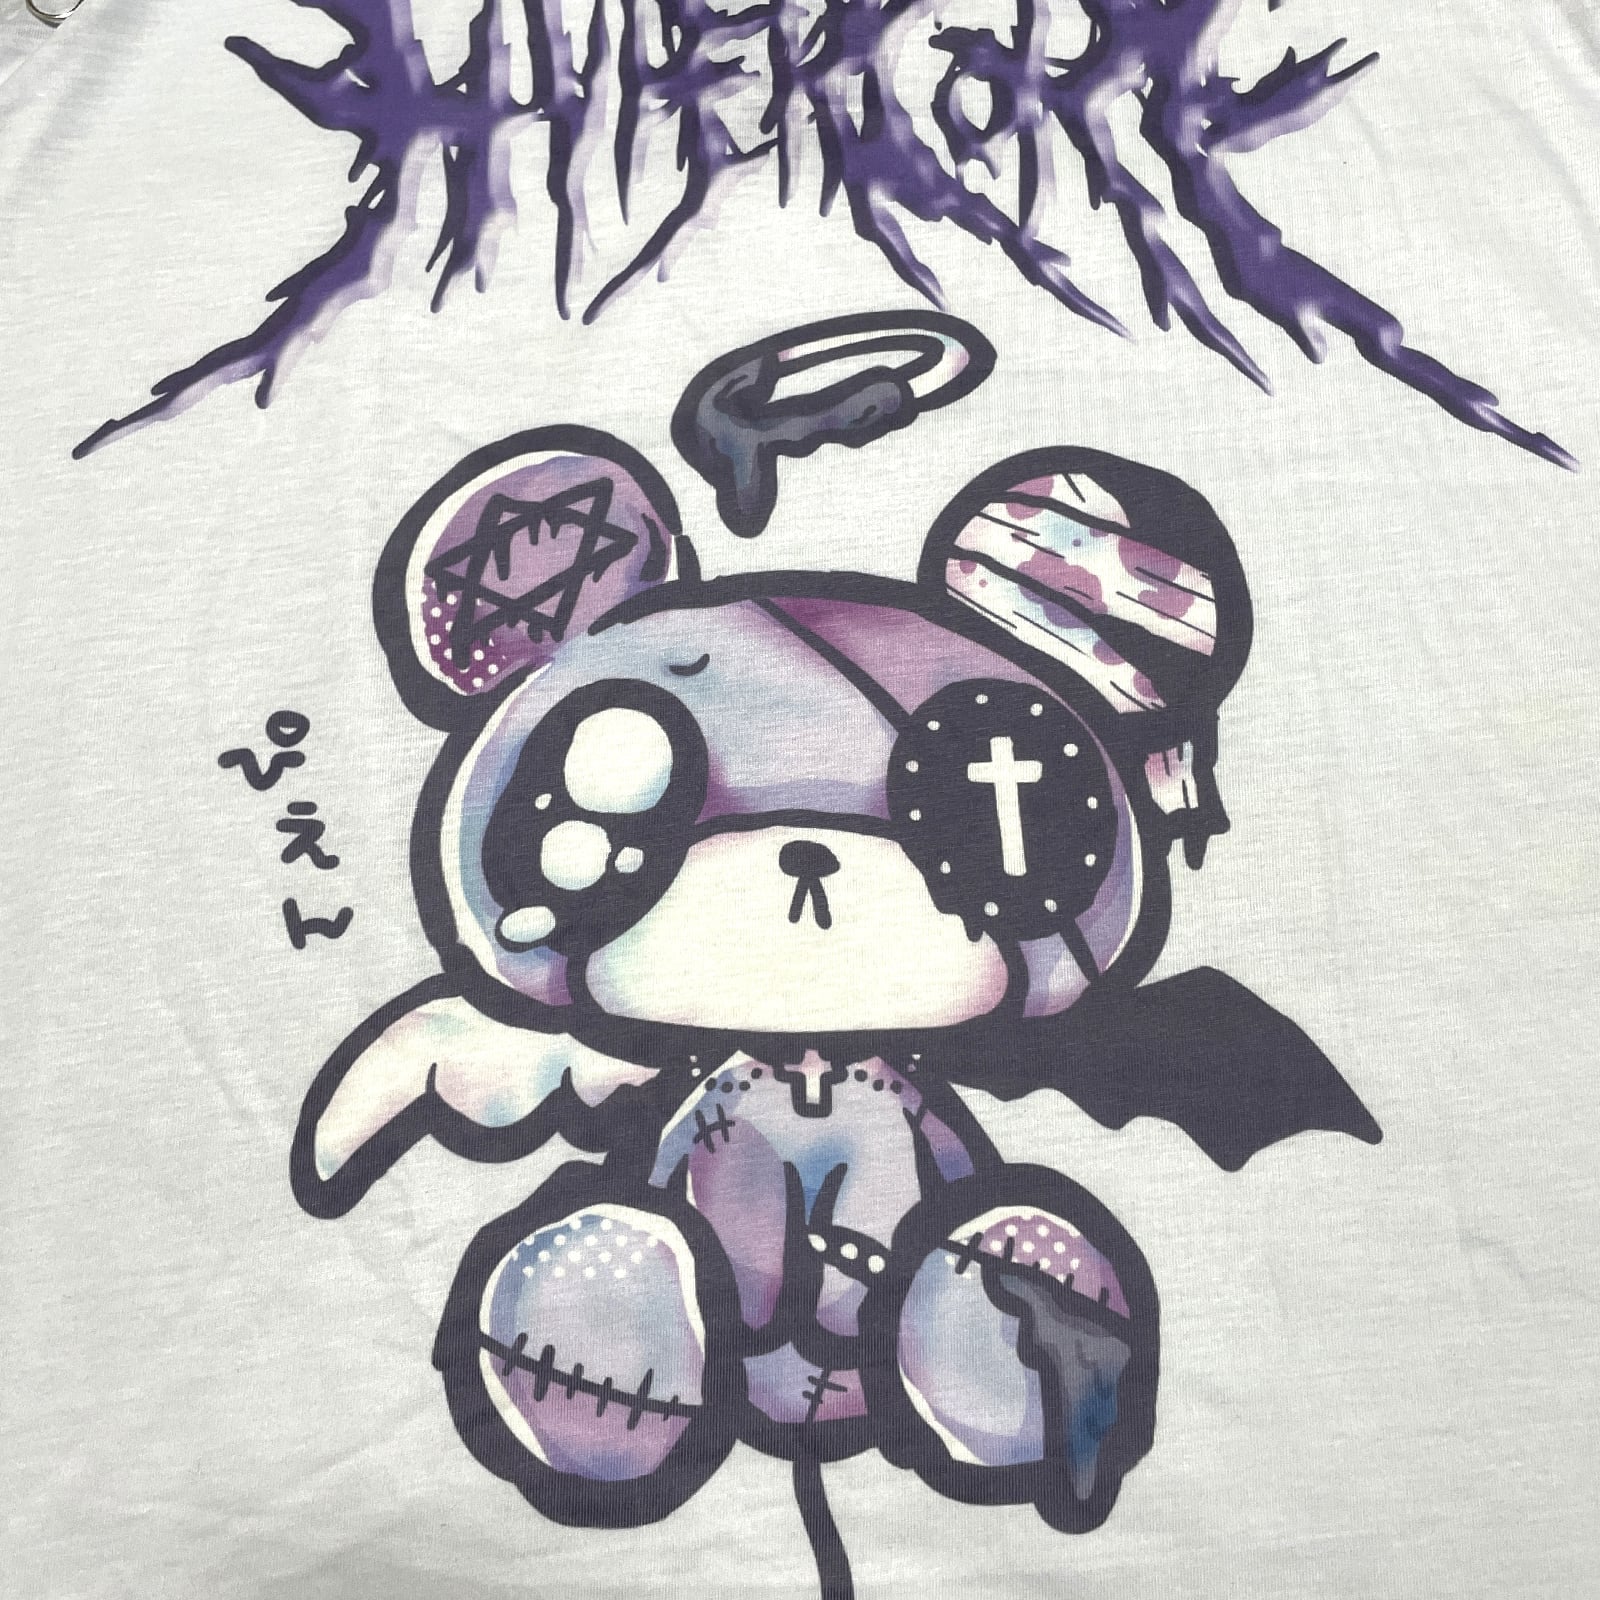 Hypercore "Pien" zip t-shirt